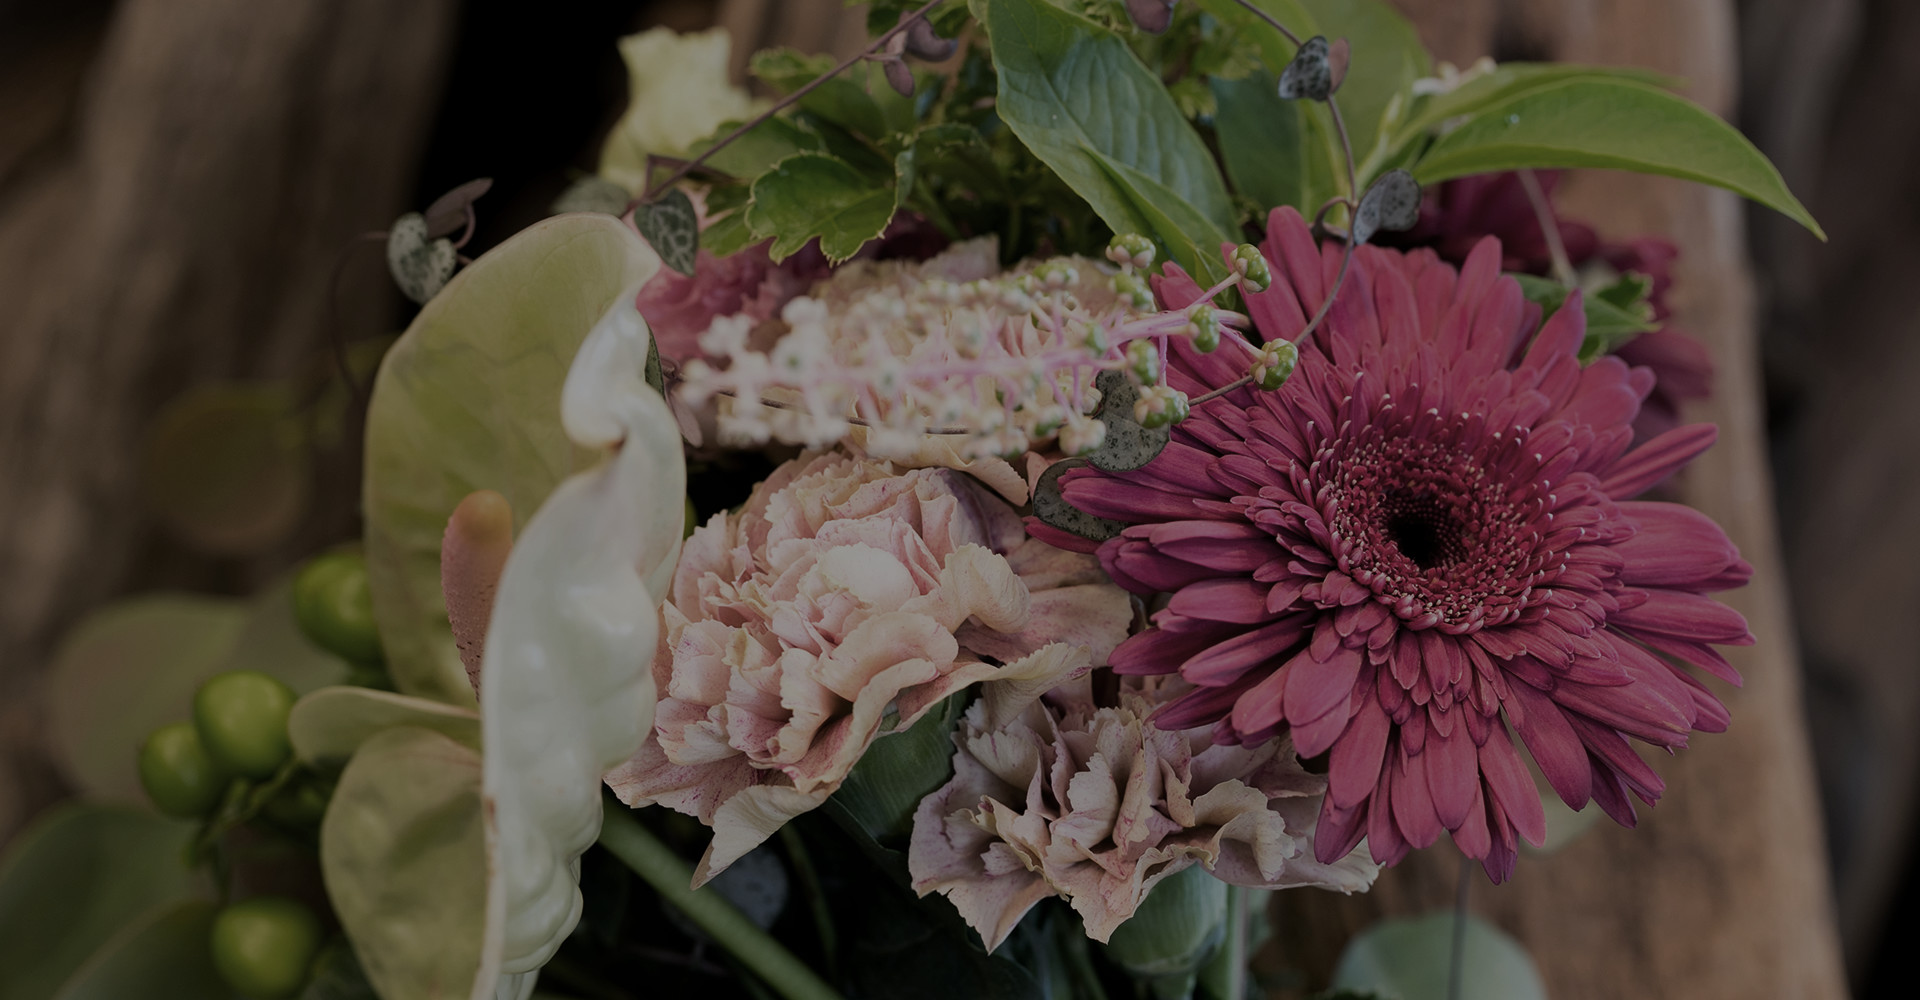 ガーデニングからギフトやブライダルまでお客様の様々なご要望に対して四季折々の花達をお届けいたします。